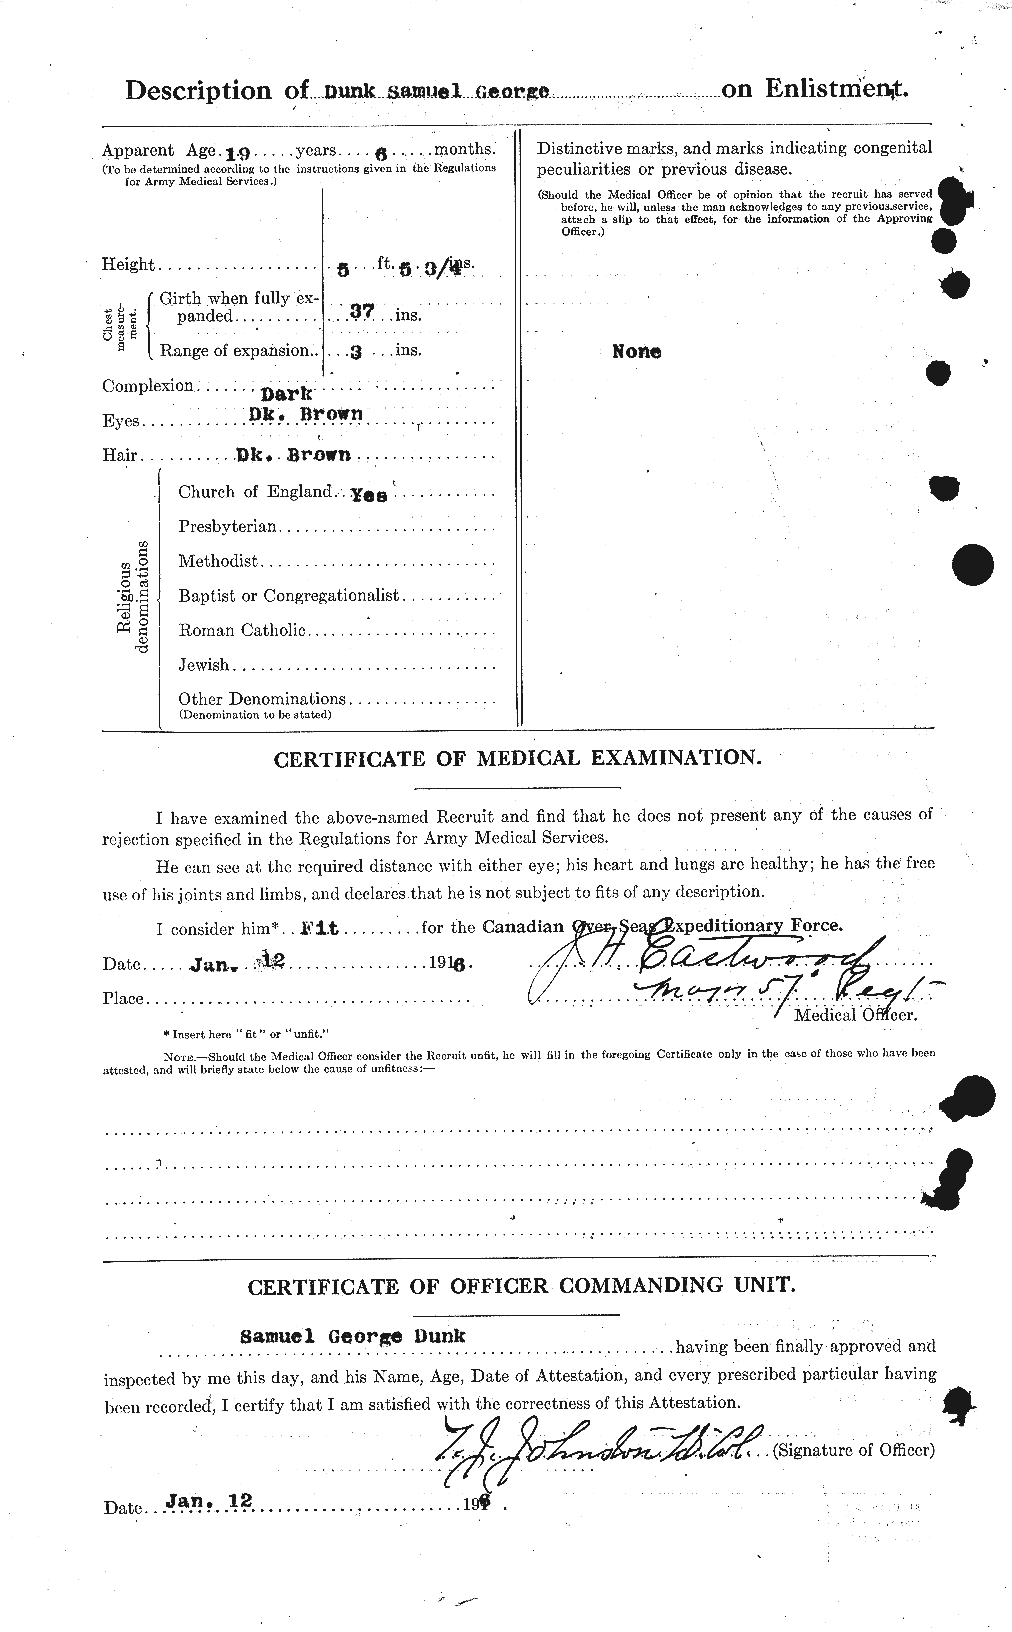 Dossiers du Personnel de la Première Guerre mondiale - CEC 302590b